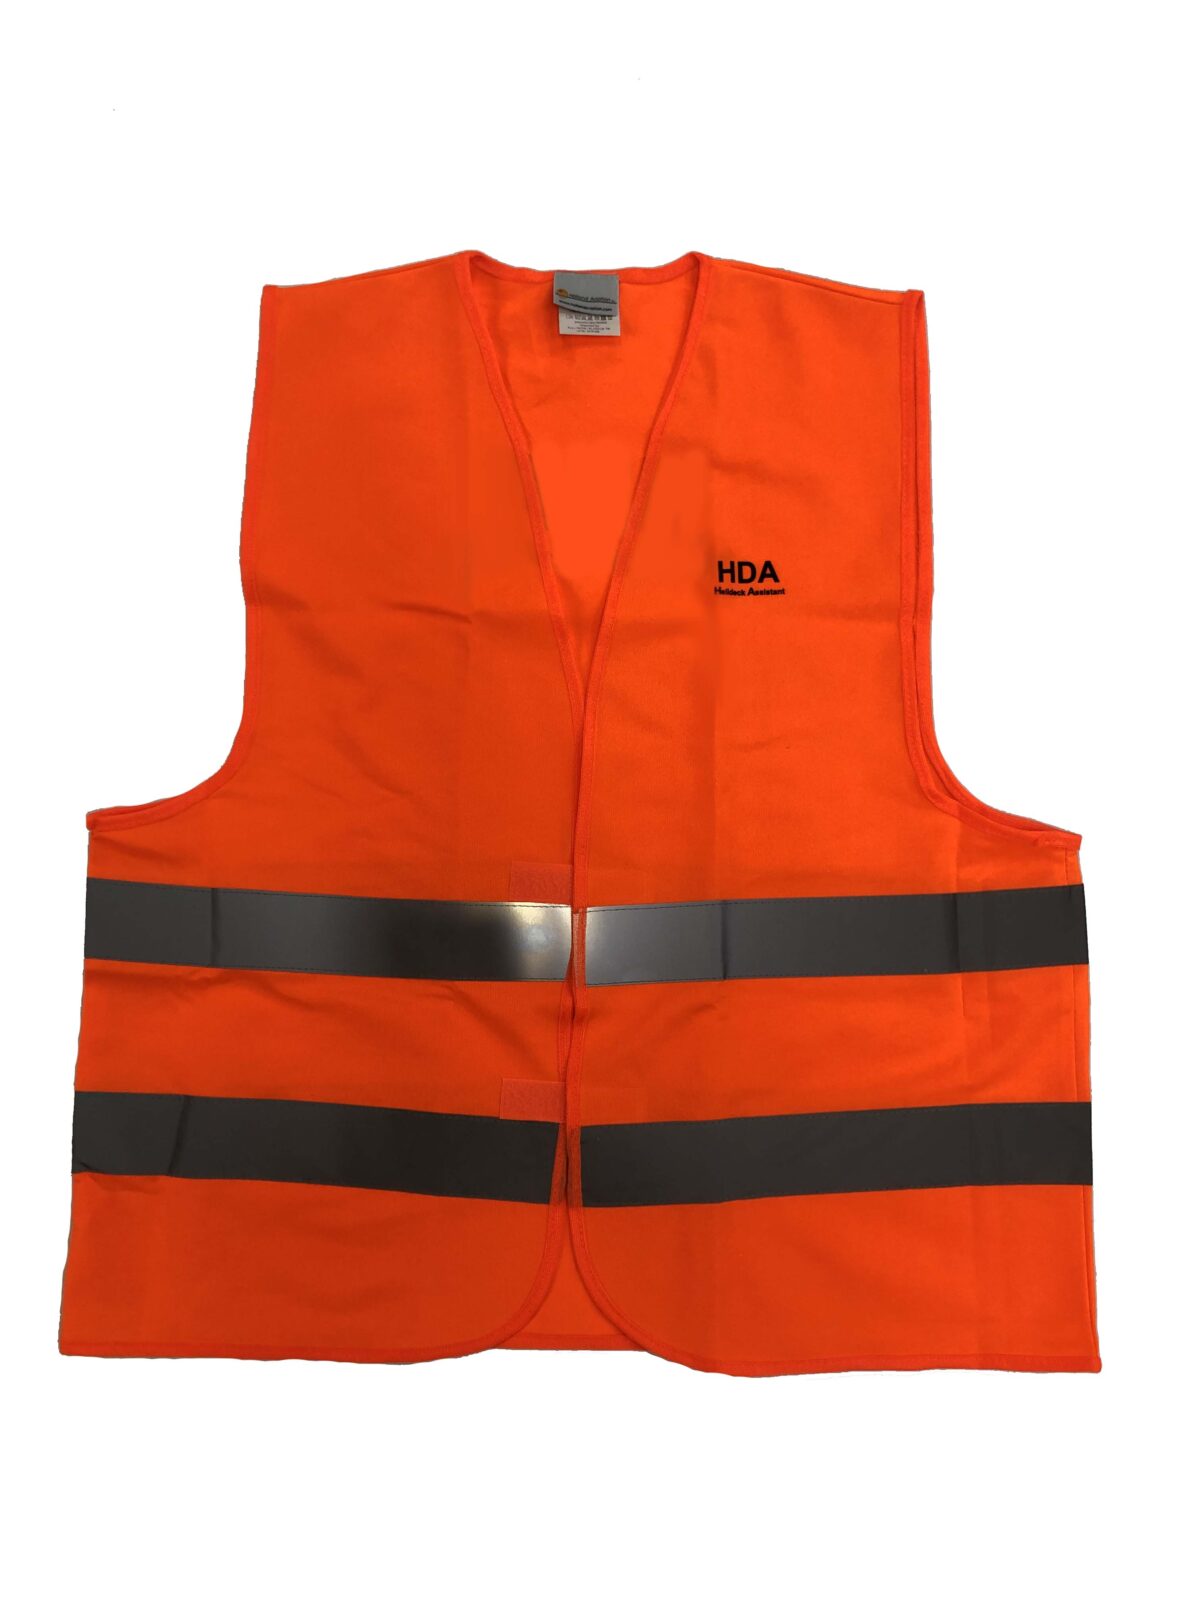 HA-HDA Safety Vest